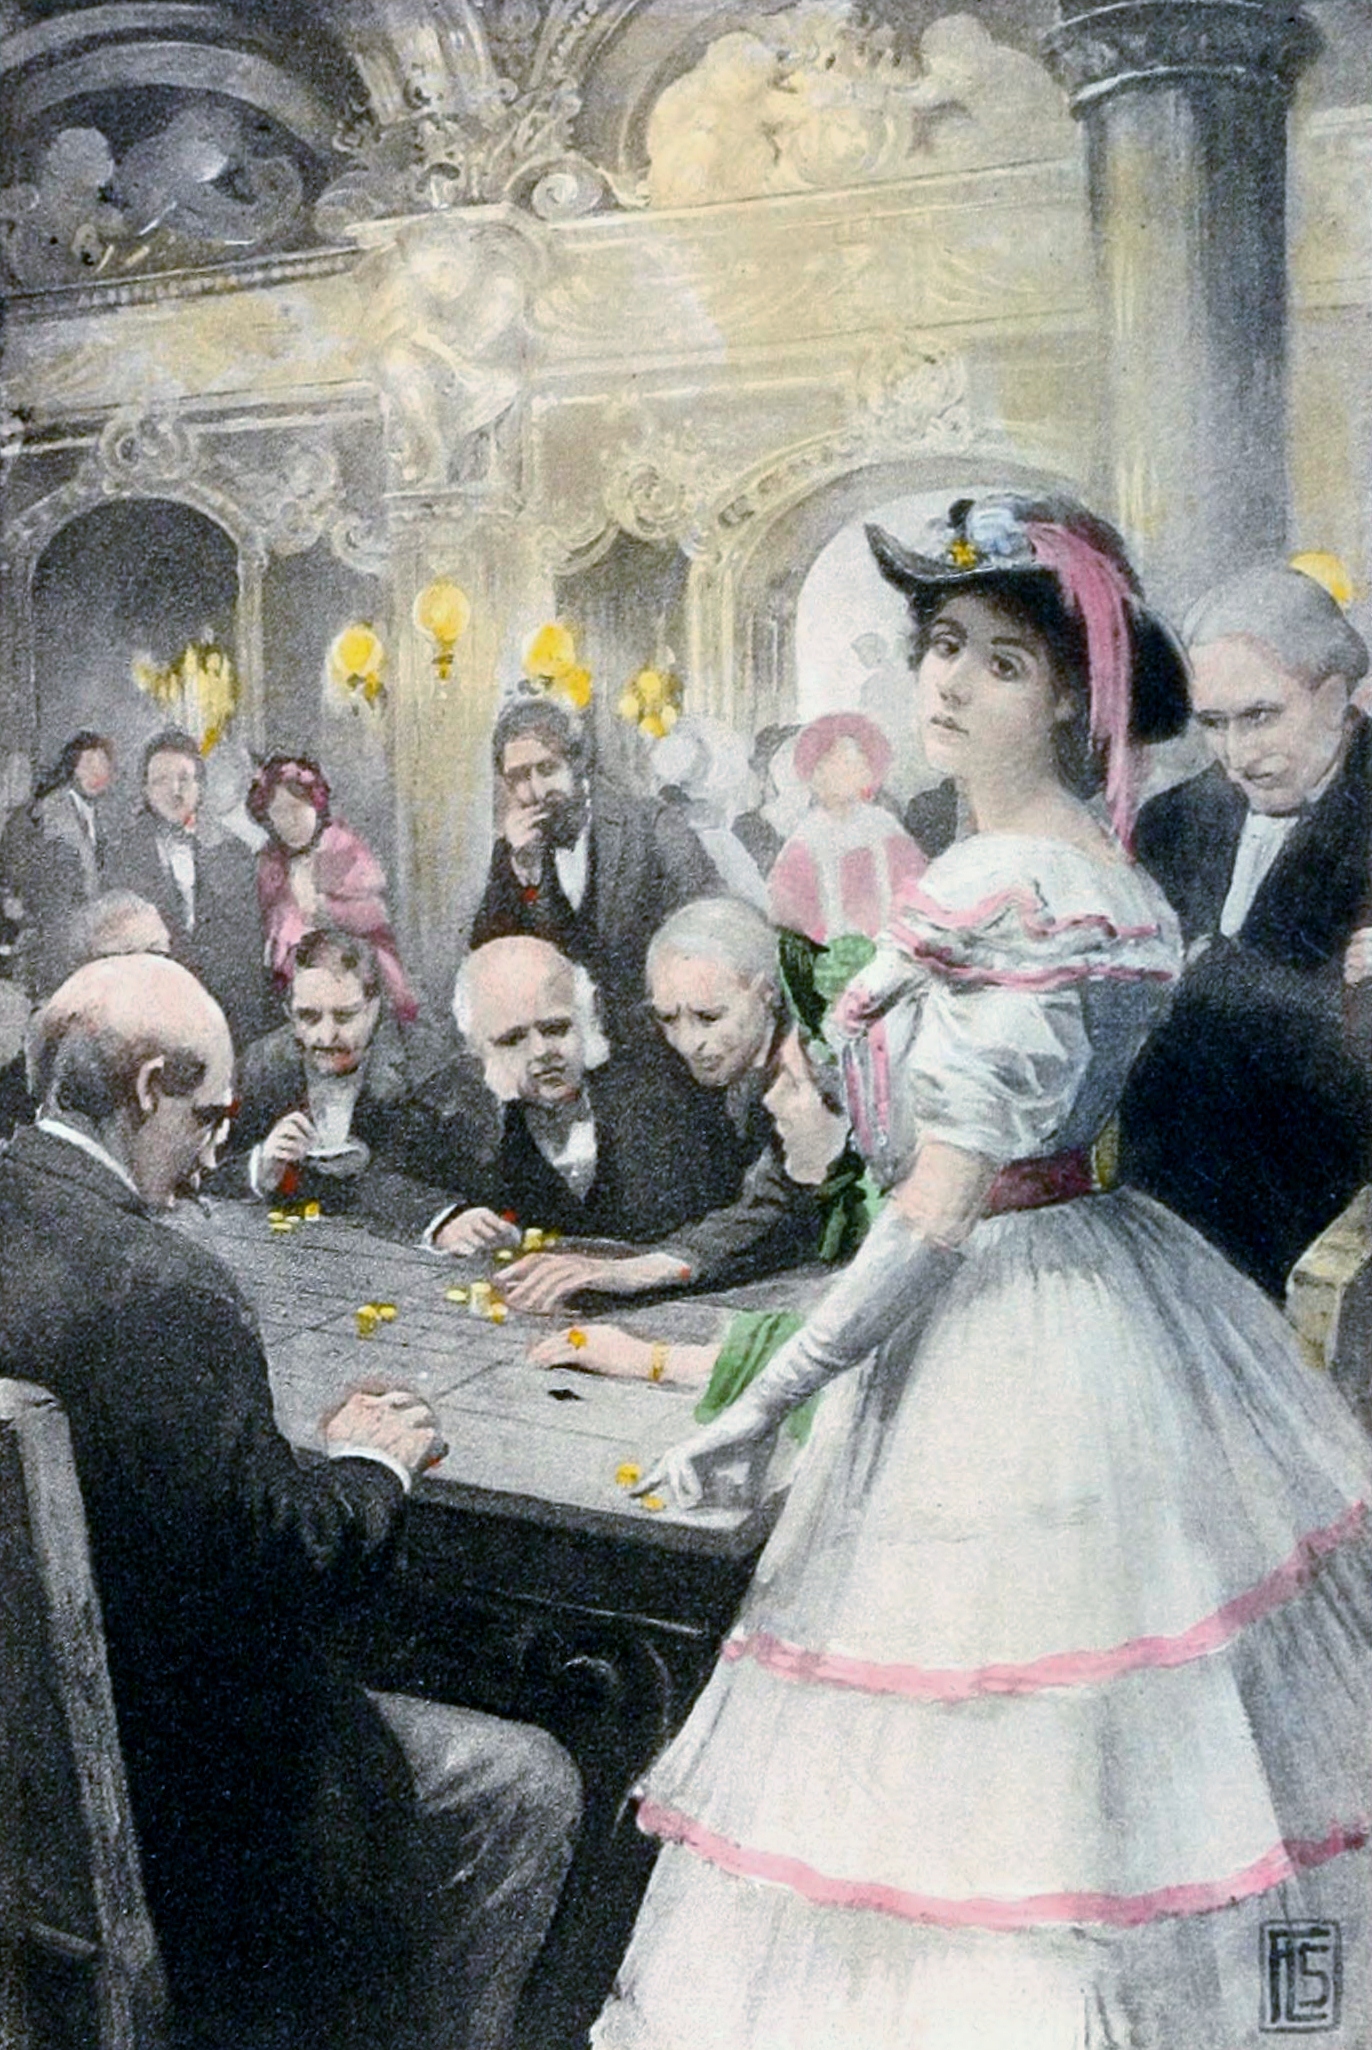 Gwendolen na mesa da roleta - ilustração de 1910 para Daniel Deronda, de George Eliot